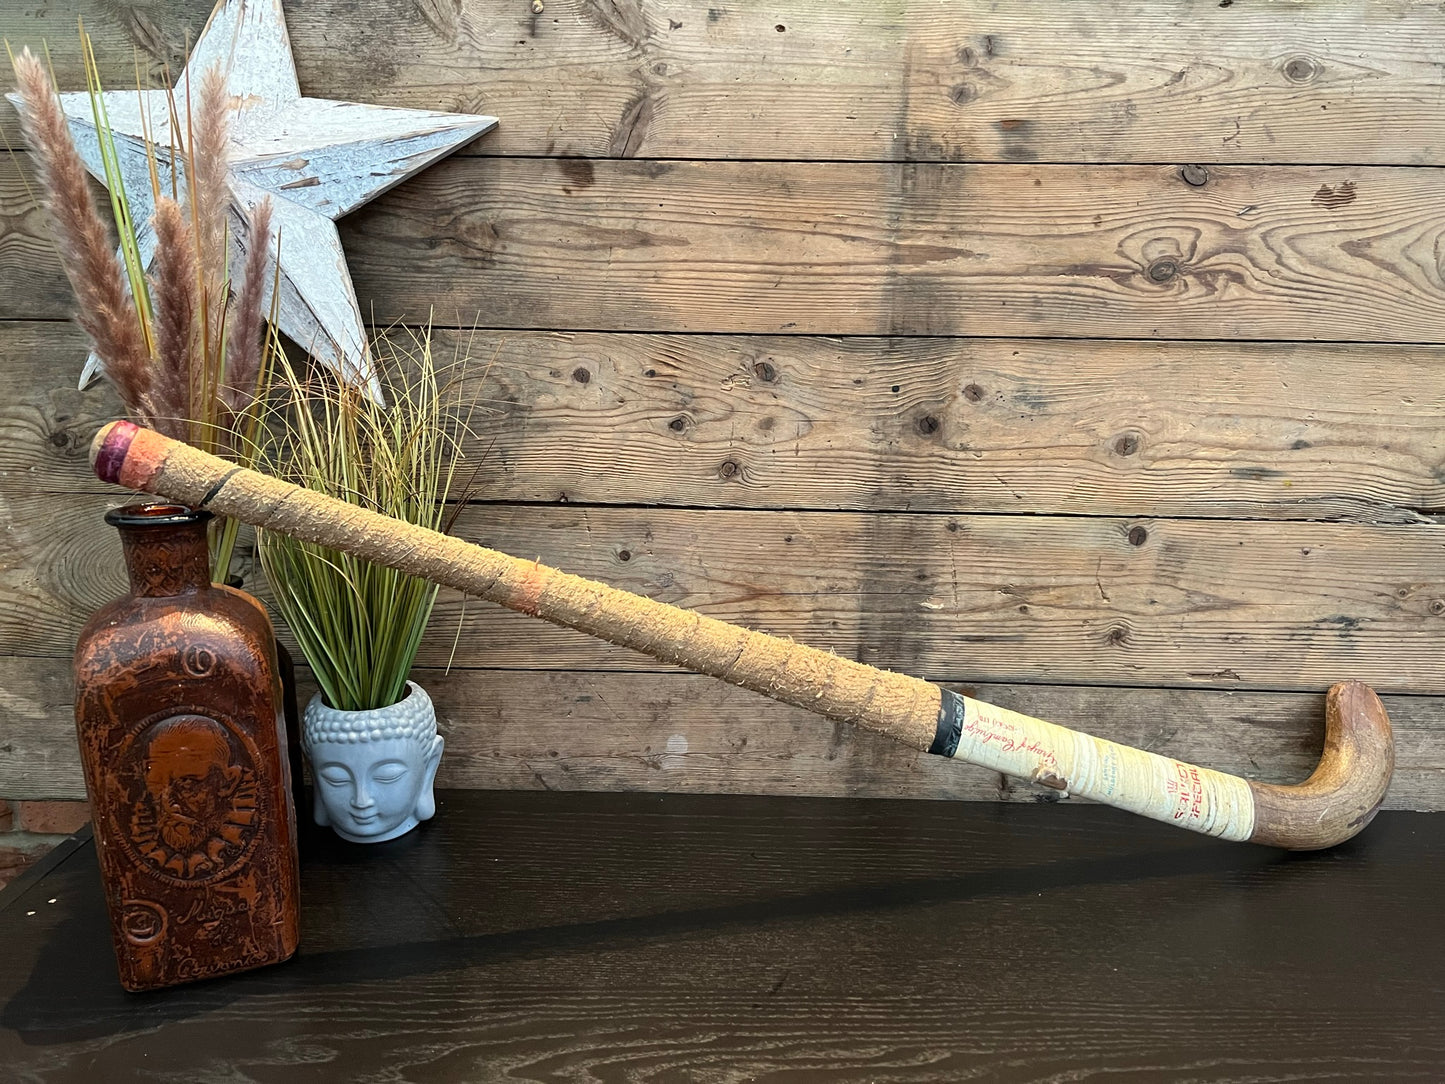 Vintage Wooden Hockey Stick Retro Décor Sport Memorabilia Display